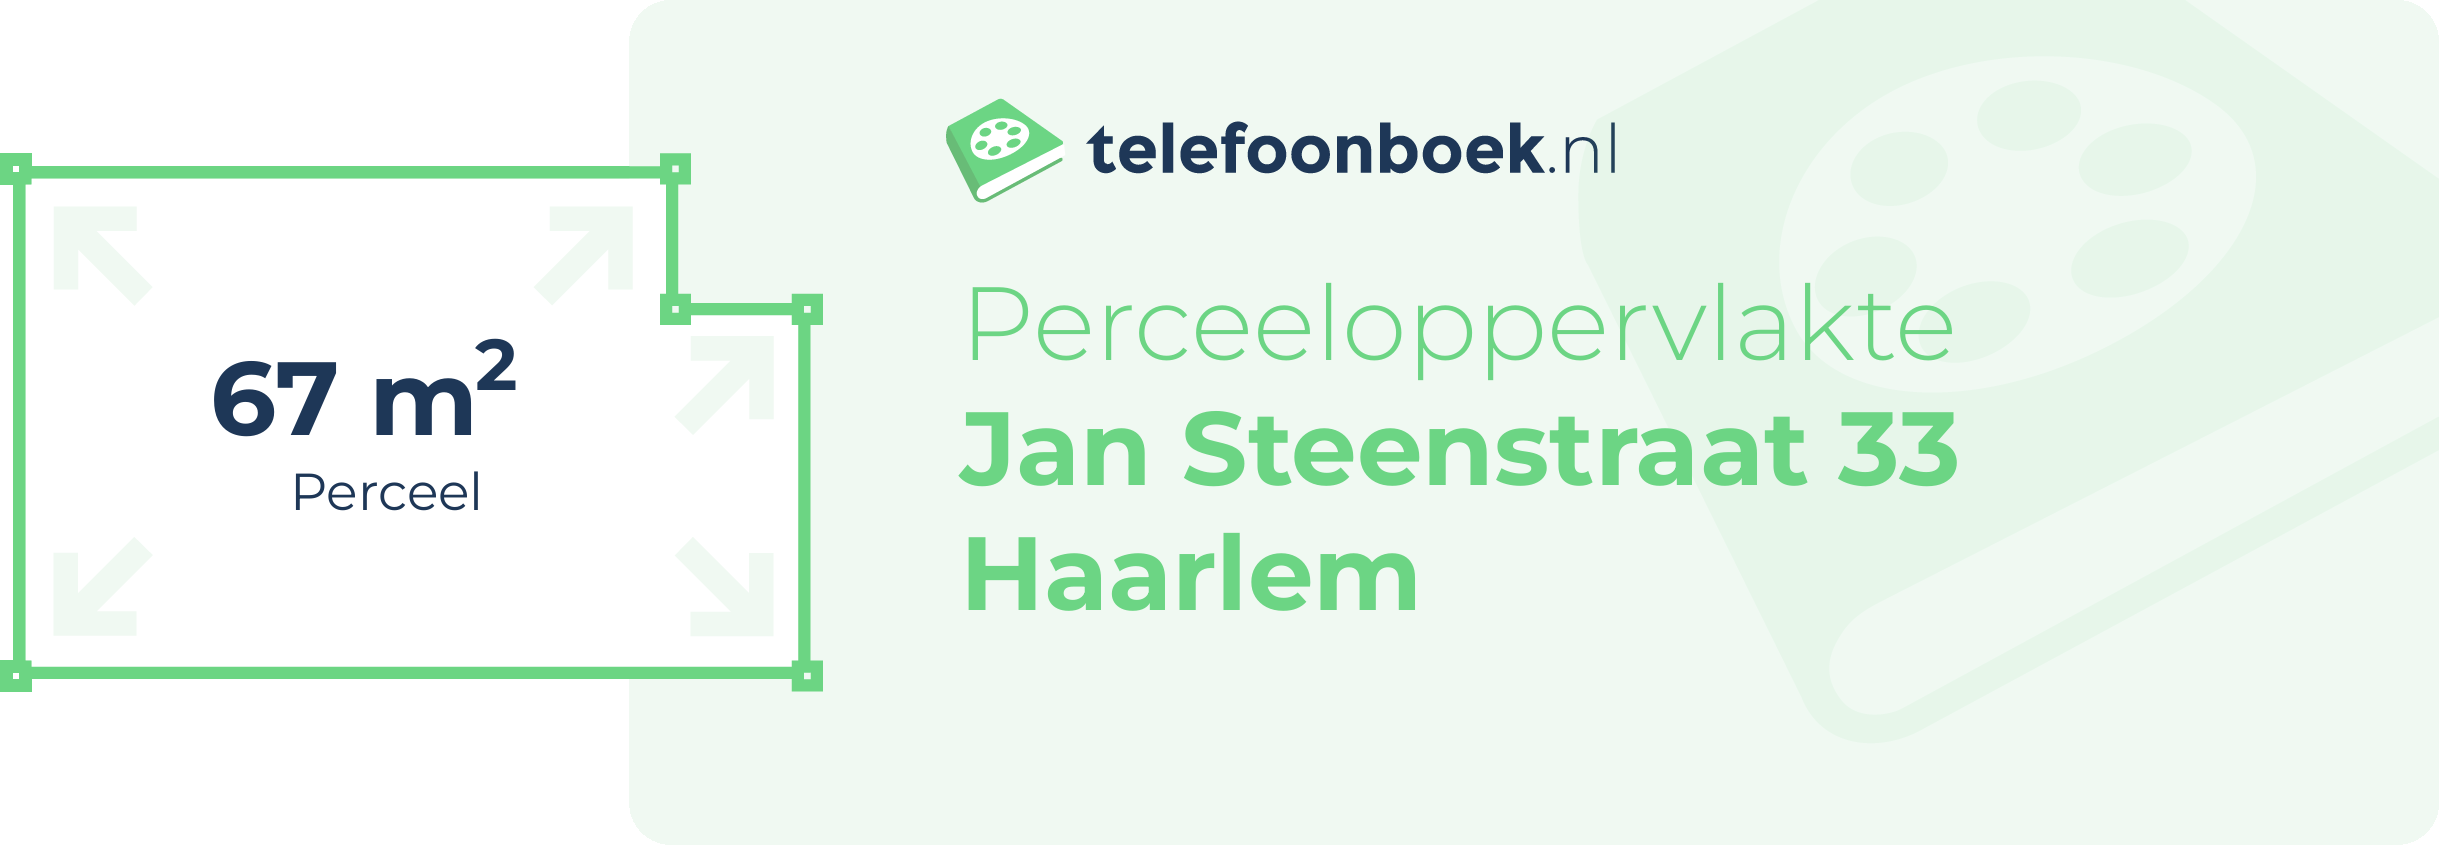 Perceeloppervlakte Jan Steenstraat 33 Haarlem